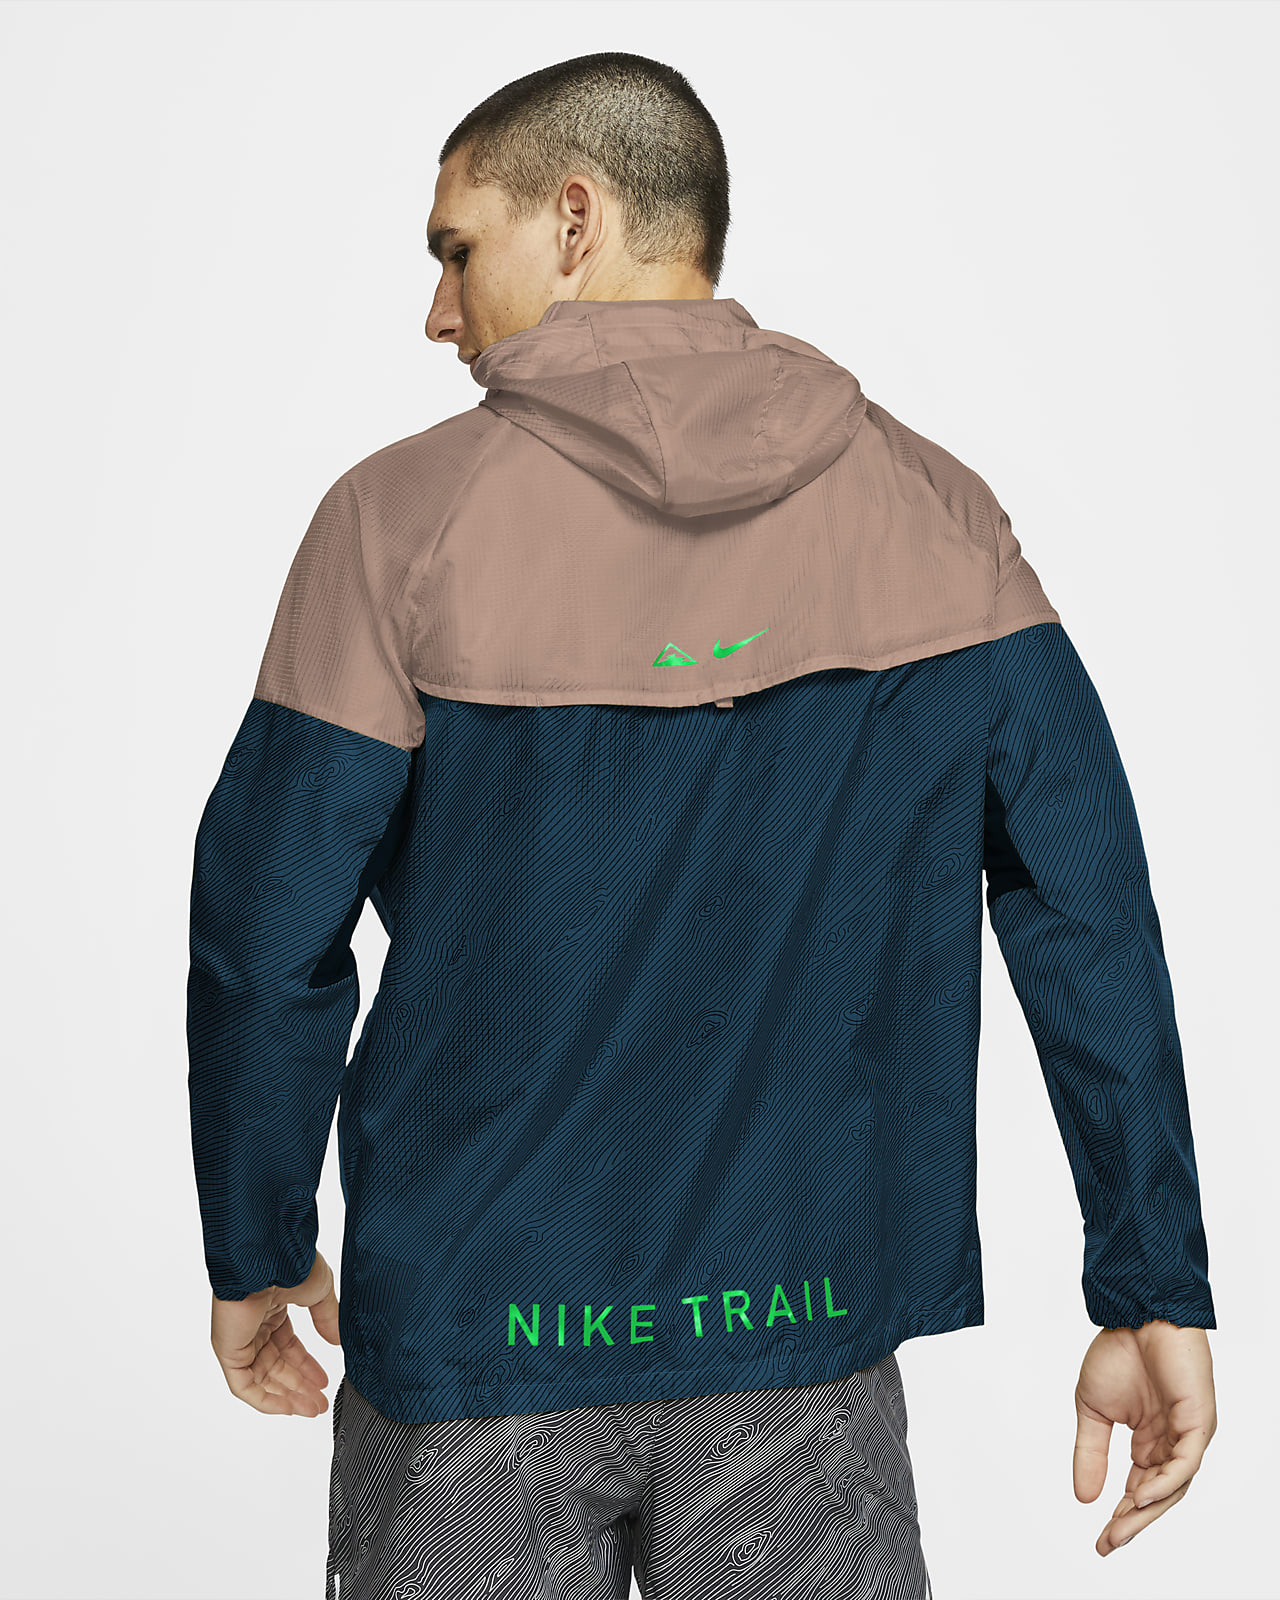 nike trail windrunner jacket